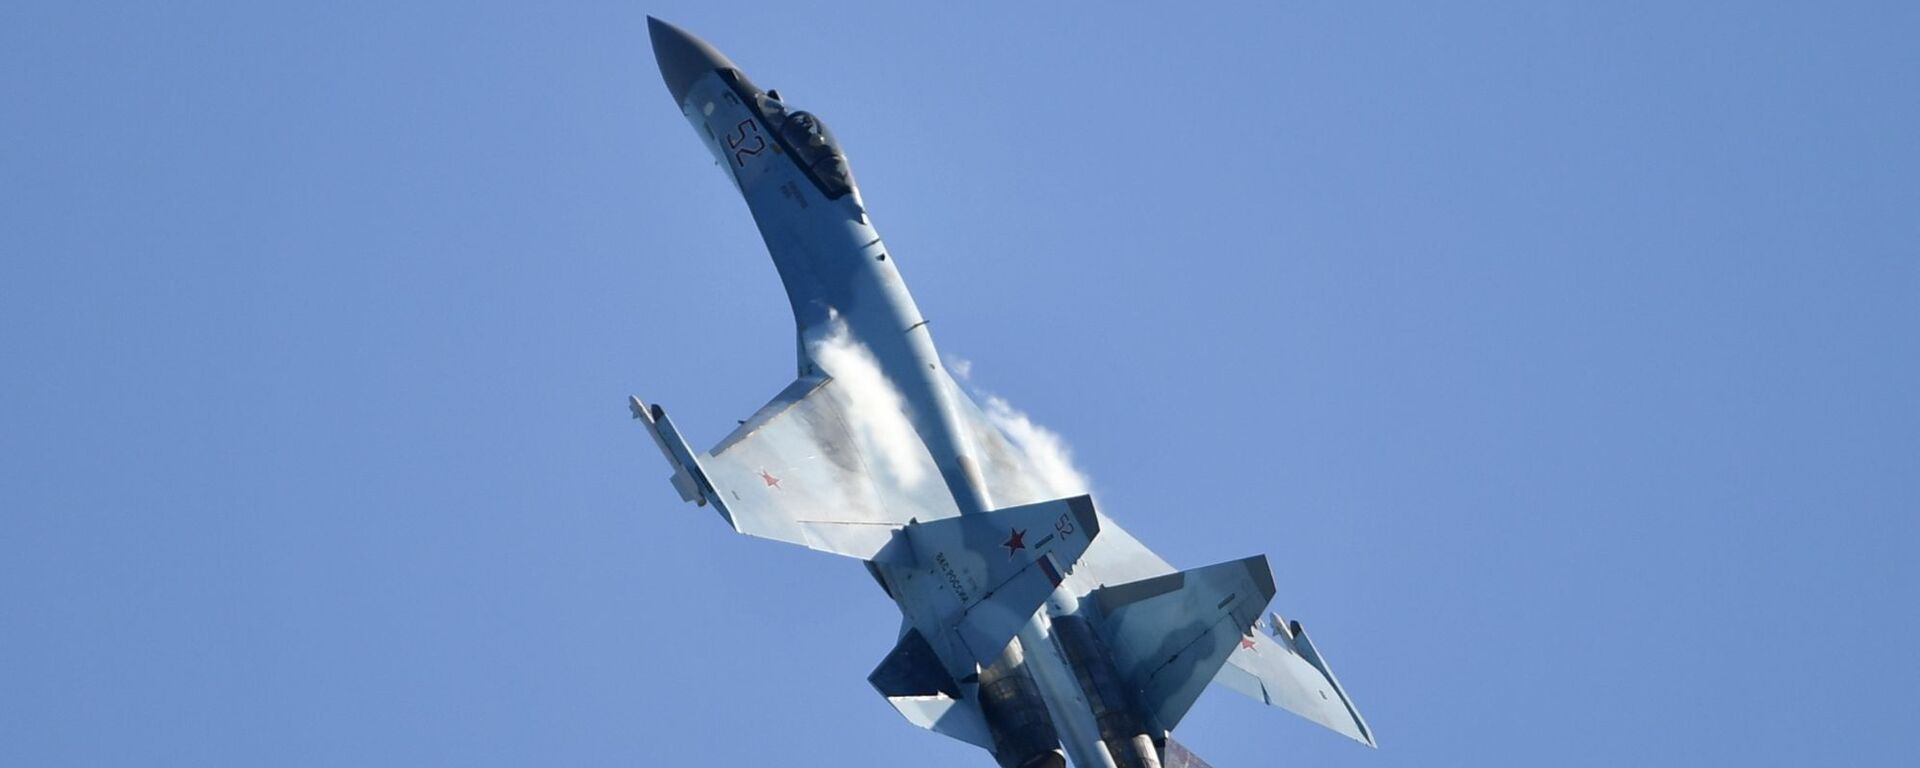 Máy bay chiến đấu đa năng Su-35 của Nga tại Triển lãm Hàng không và Vũ trụ Quốc tế MAKS-2019 - Sputnik Việt Nam, 1920, 12.11.2019